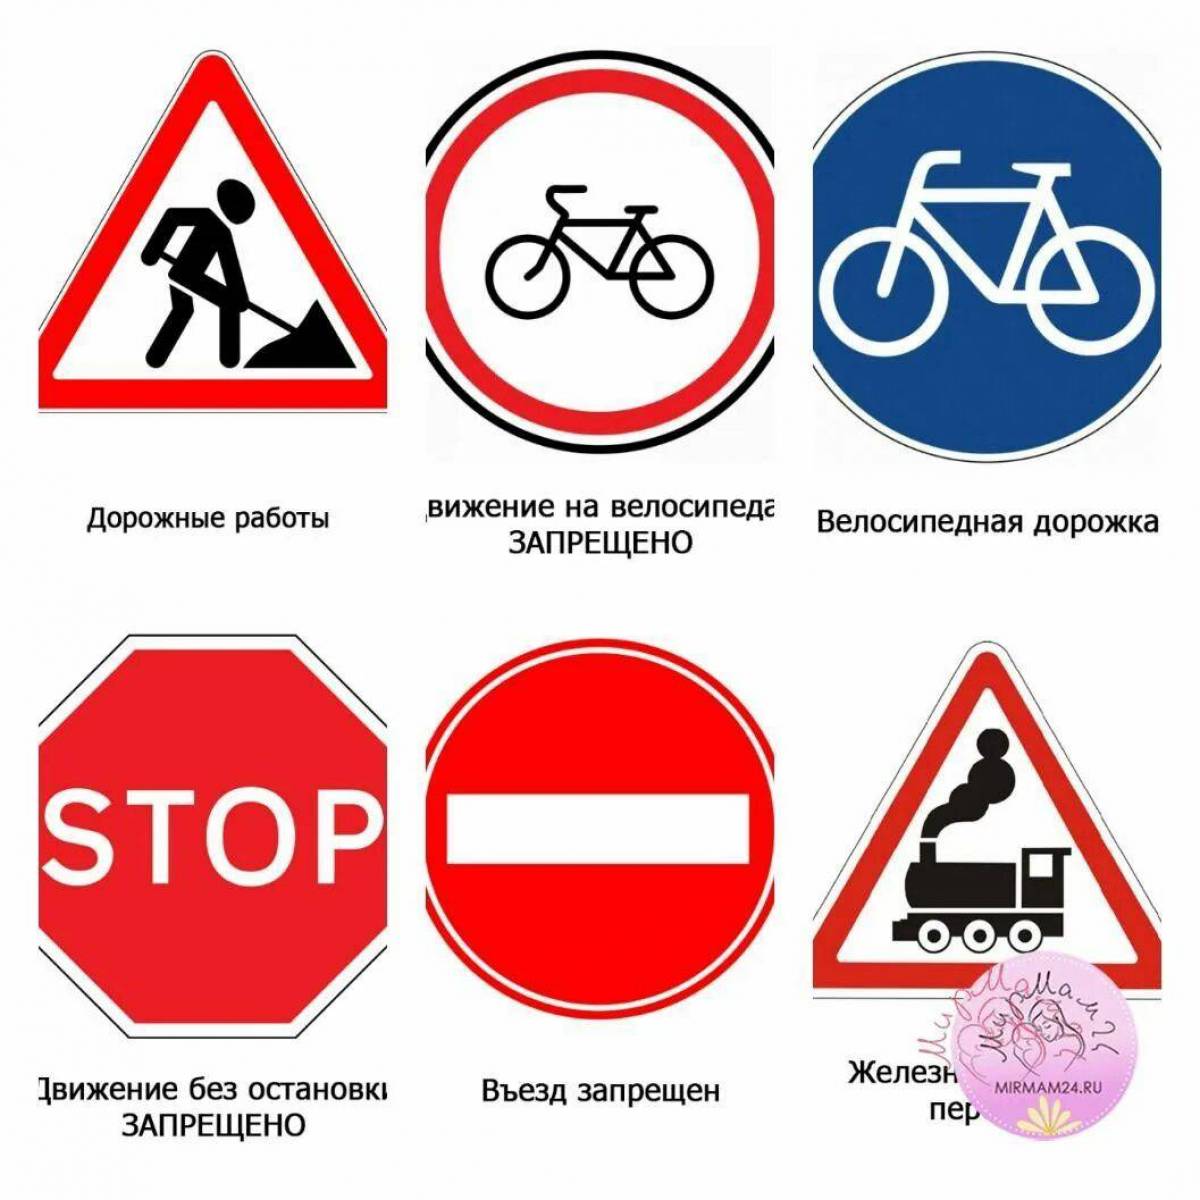 Знаки дорожные проверка. Дорожные знаки. Рисунки дорожных знаков. Знаки дорожного движения для детей. Ребенок с дорожным знаком.